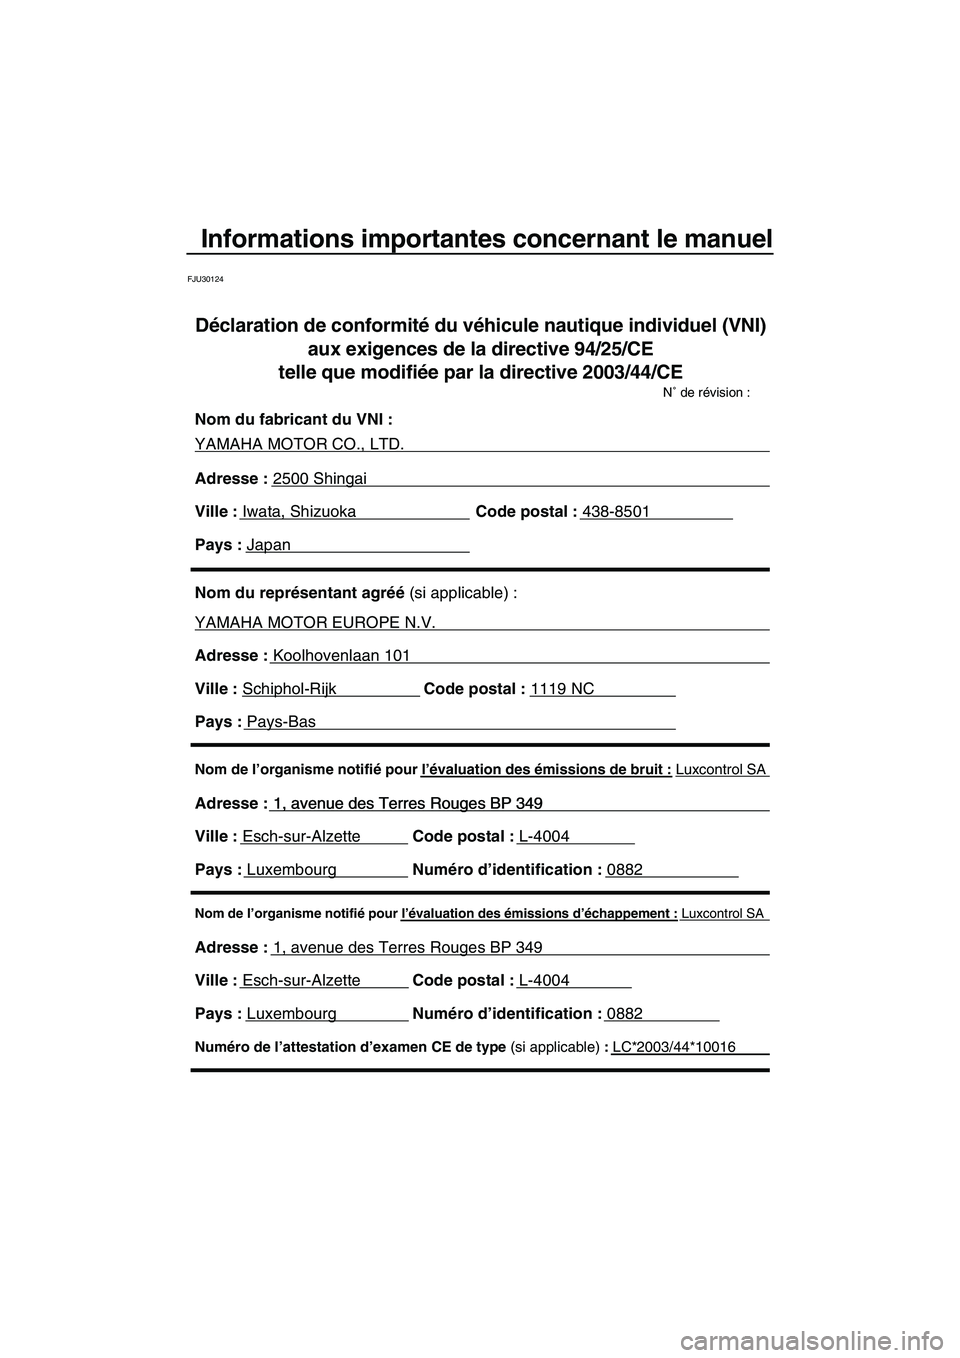 YAMAHA VX SPORT 2010  Notices Demploi (in French) Informations importantes concernant le manuel
FJU30124
Nom de l’organisme notifié pour l’évaluation des émissions d’échappement : Luxcontrol SA
Adresse : 1, avenue des Terres Rouges BP 349 
